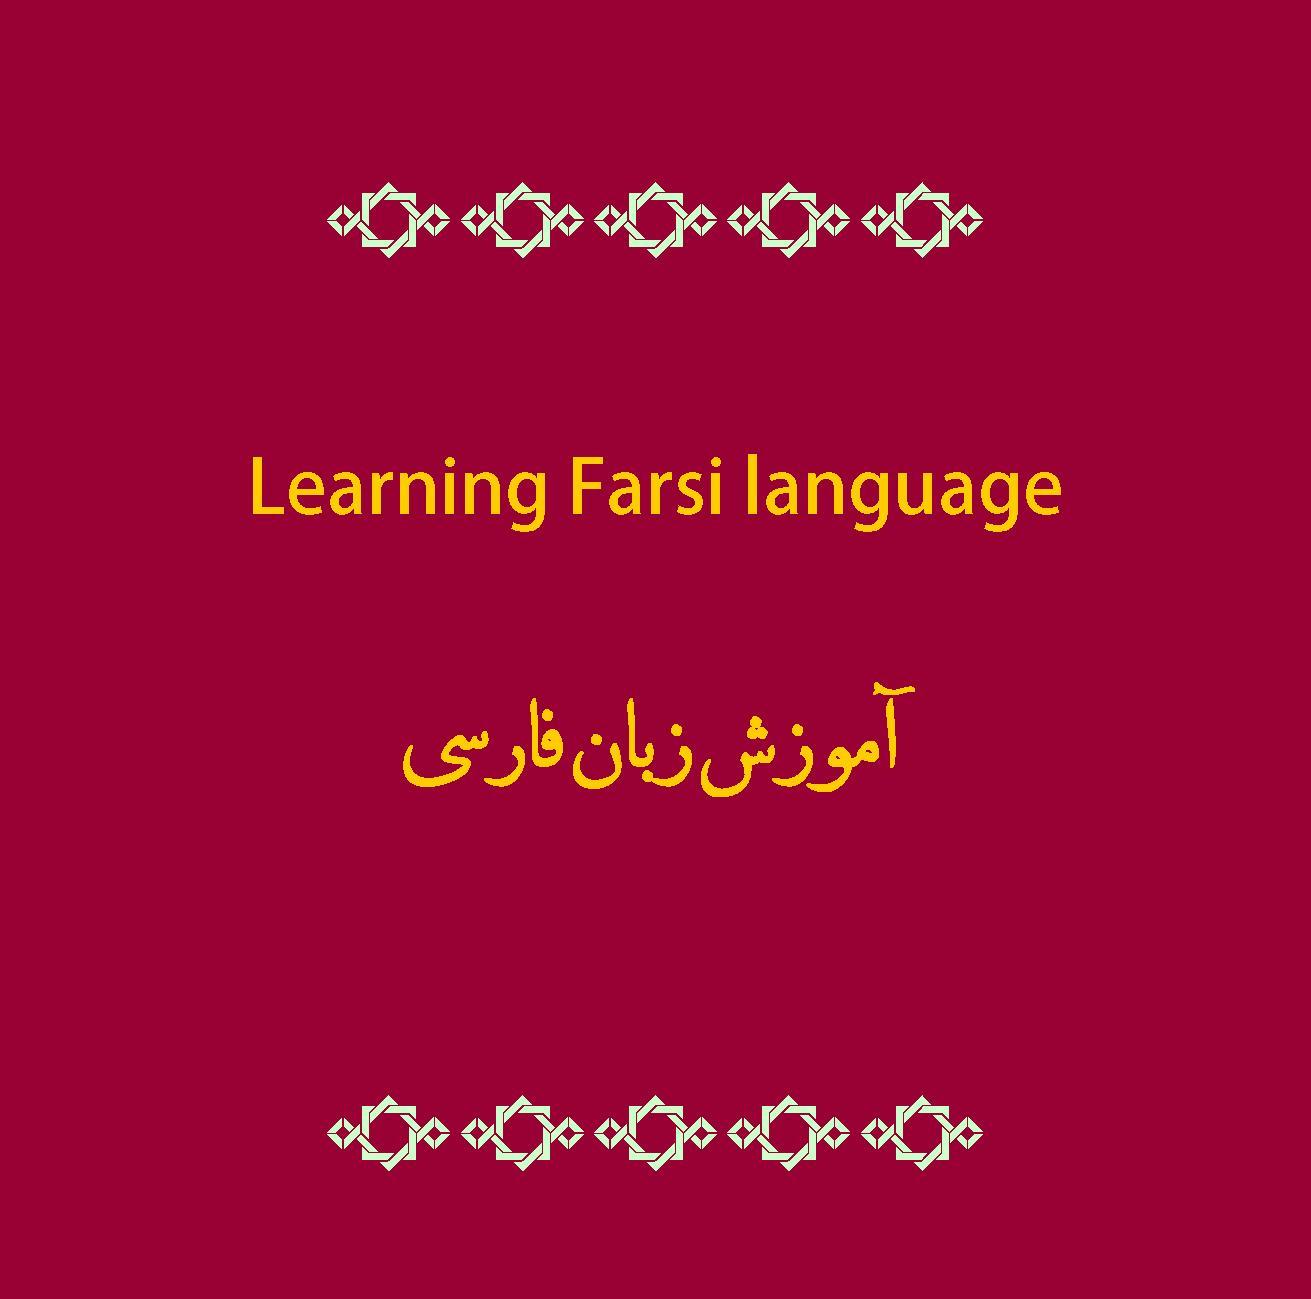 D8B2D8A8D8A7D986 D981D8A7D8B1D8B3DB8C 1 - Learning Farsi «Persian» language